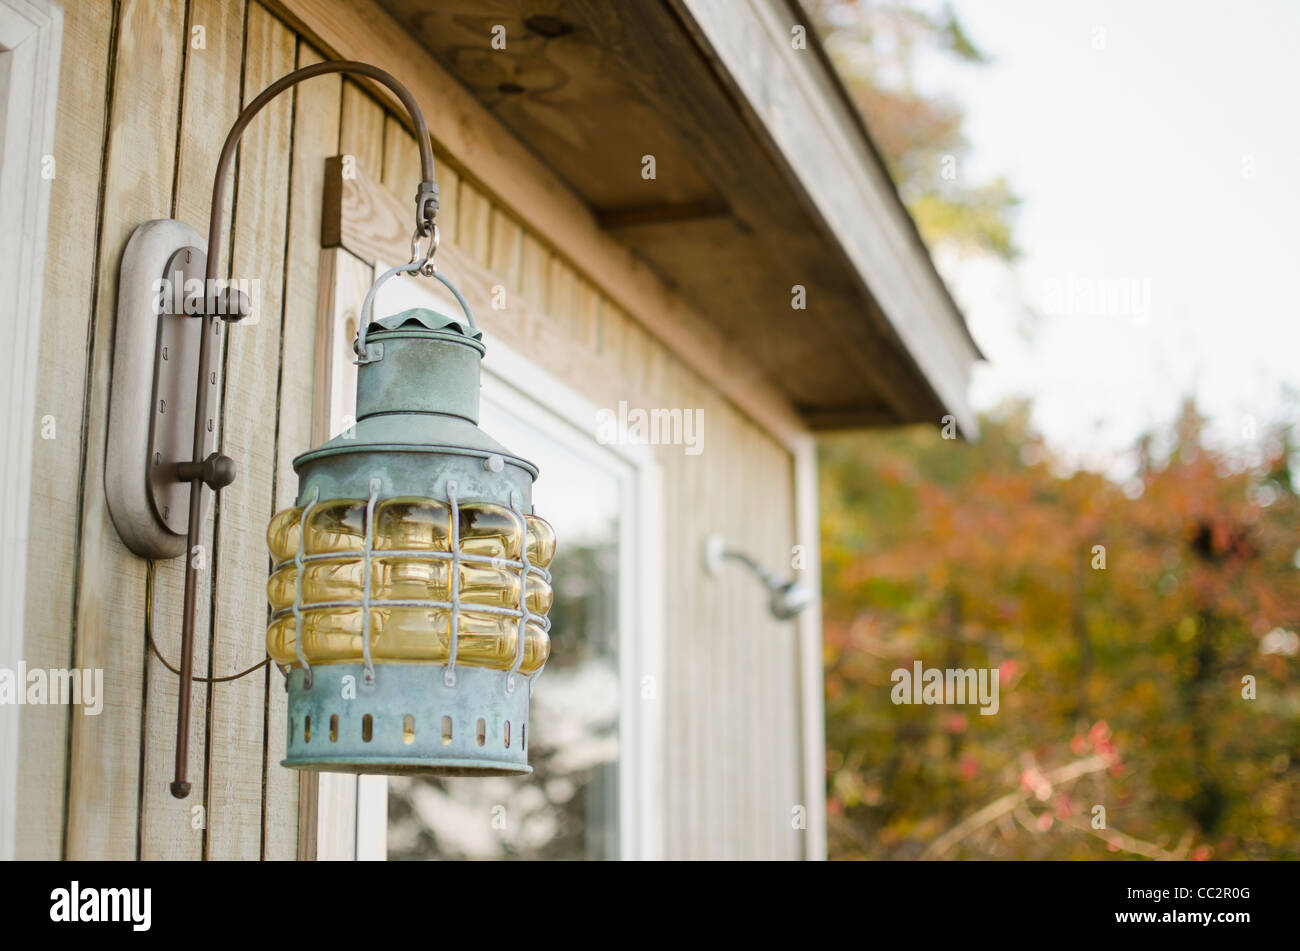 USA, Maryland, Annapolis, Close up of lantern sur cabane en bois Banque D'Images